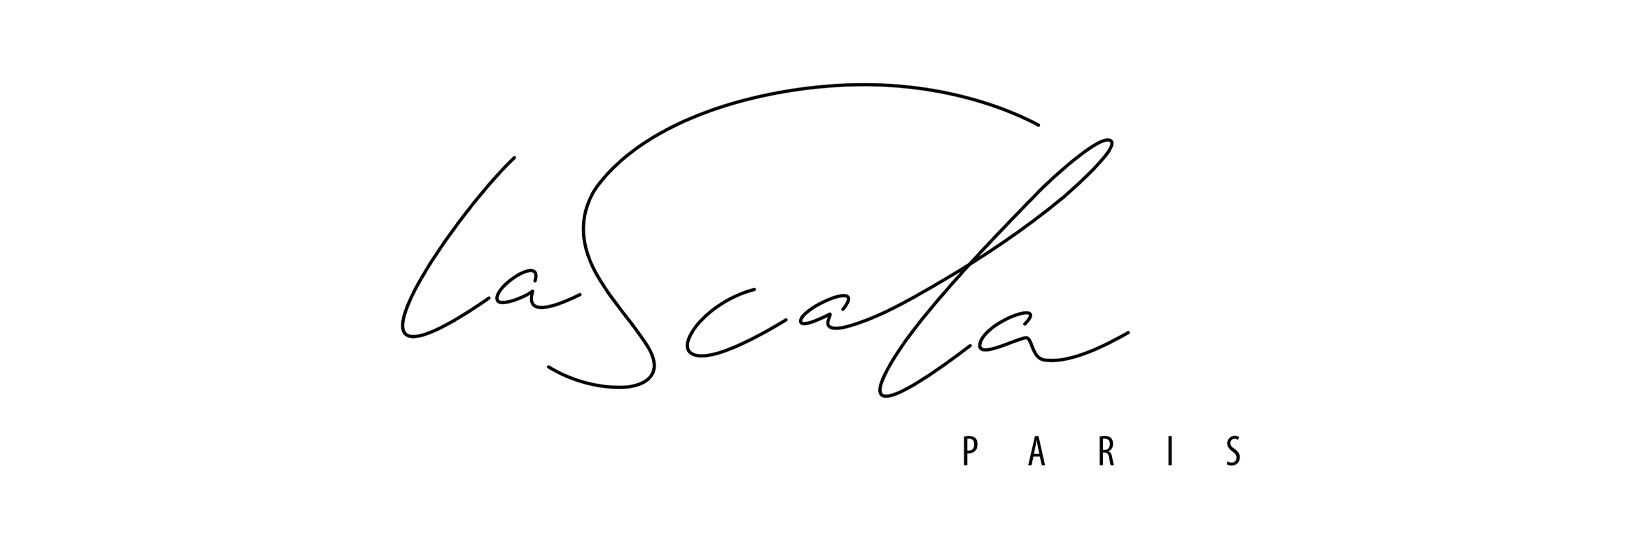 LaScala logo image